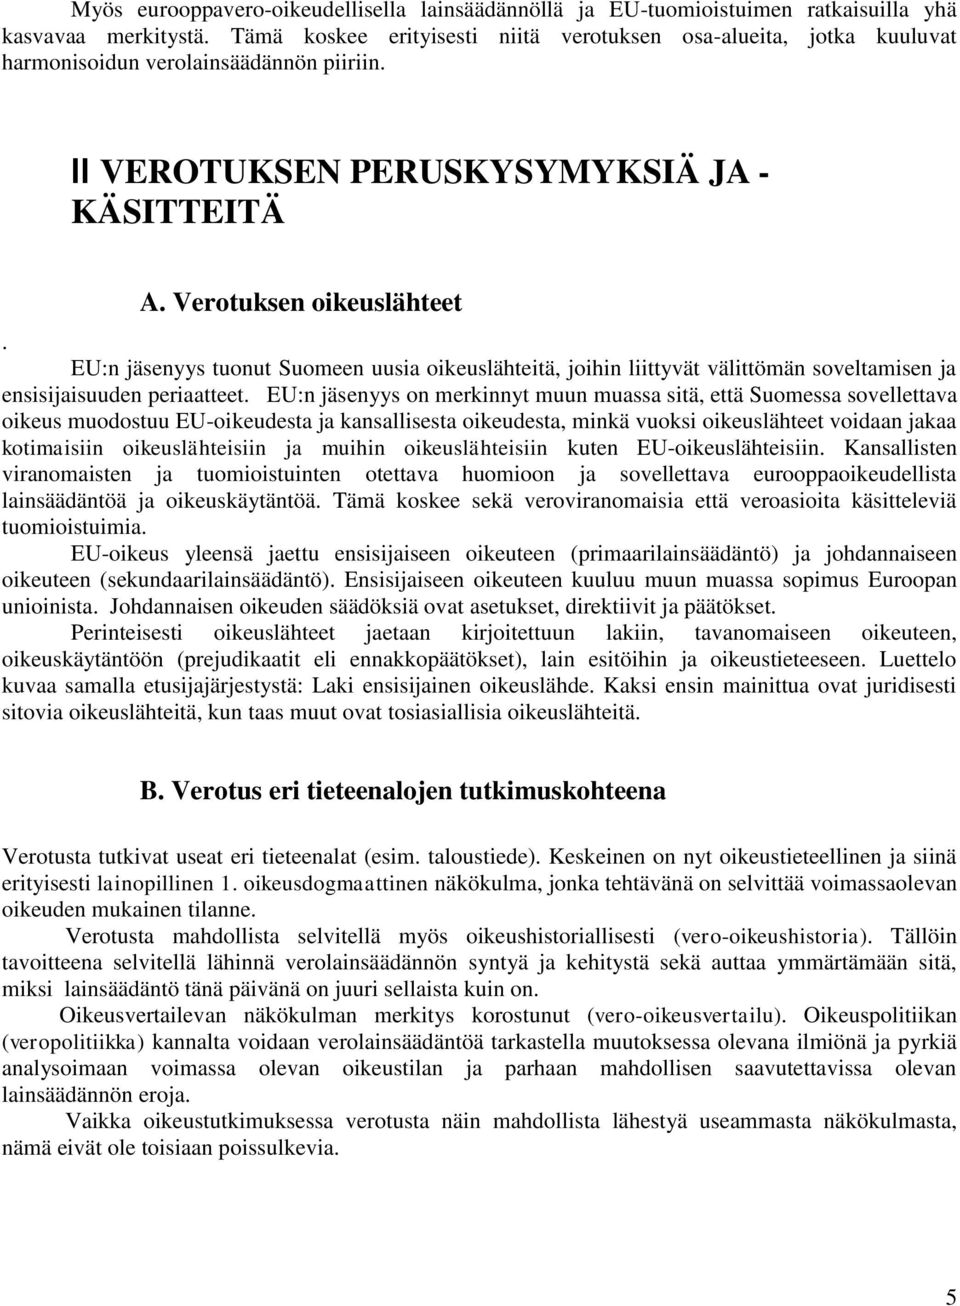 EU:n jäsenyys tuonut Suomeen uusia oikeuslähteitä, joihin liittyvät välittömän soveltamisen ja ensisijaisuuden periaatteet.